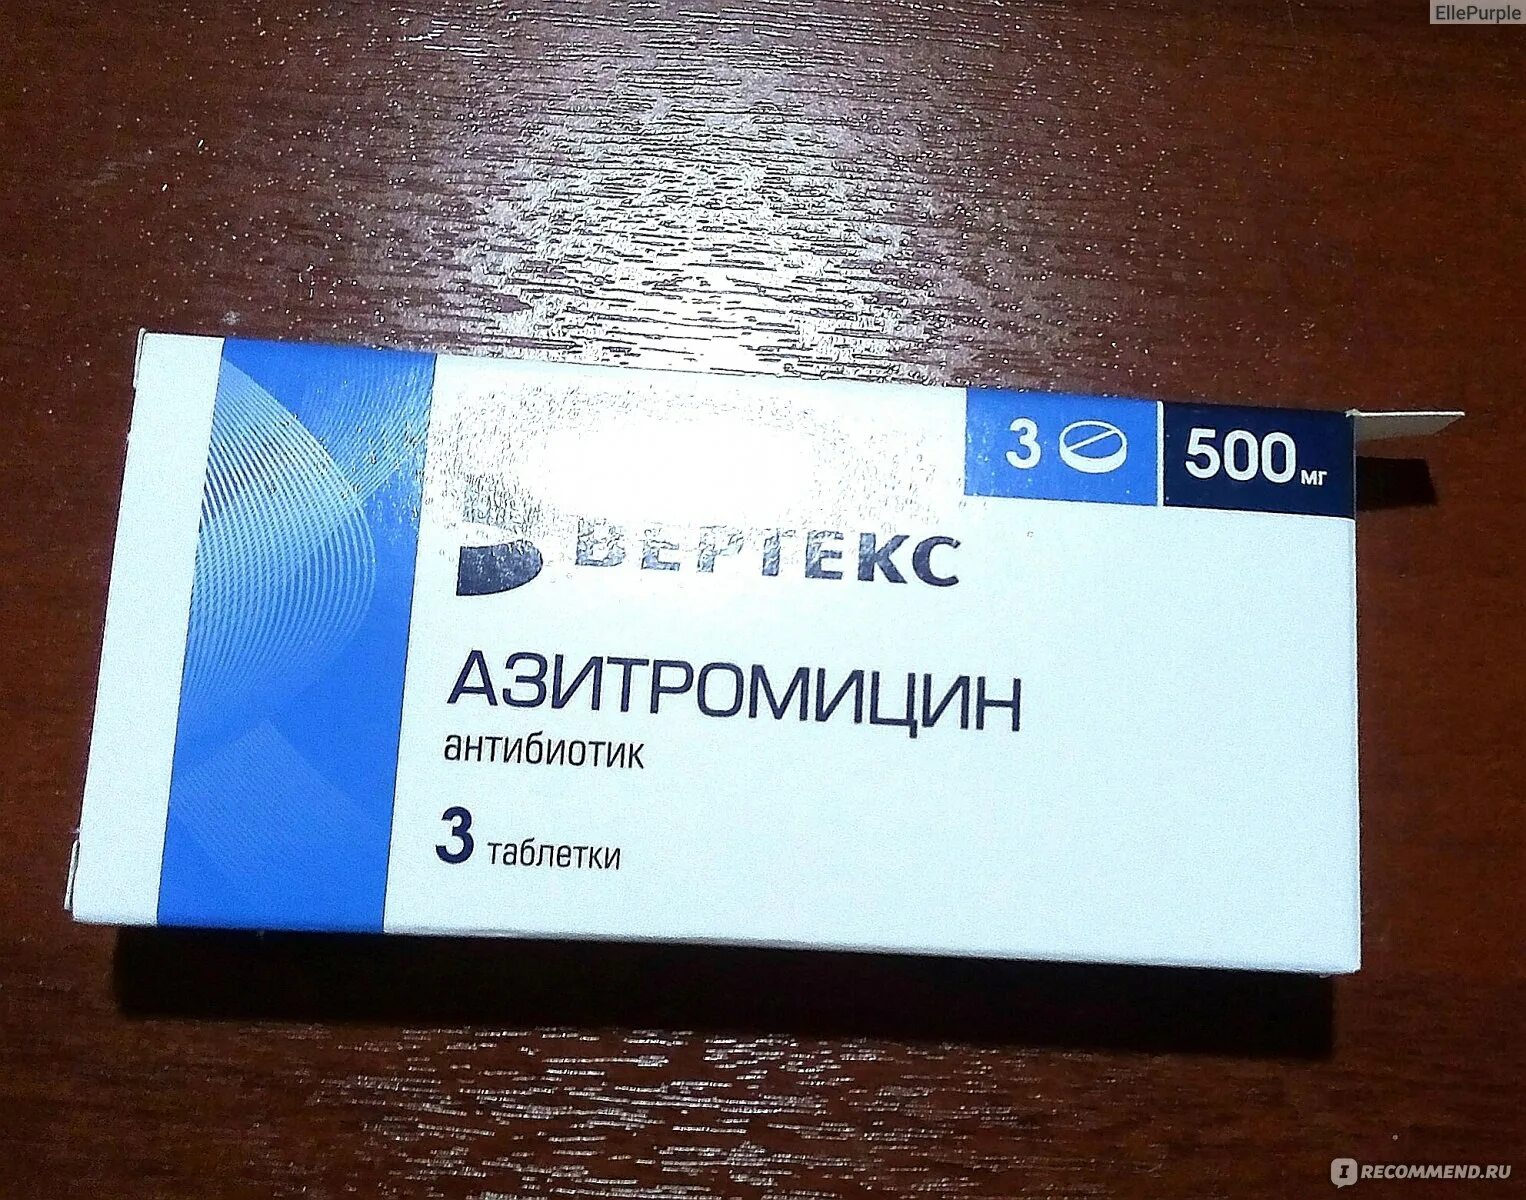 Антибиотик Азитромицин 500 мг. Азитромицин 500 таблетки антибиотики. Азитромицин 500 мг Вертекс. Вертекс таблетки Азитромицин антибиотик. 3 антибиотика в упаковке название